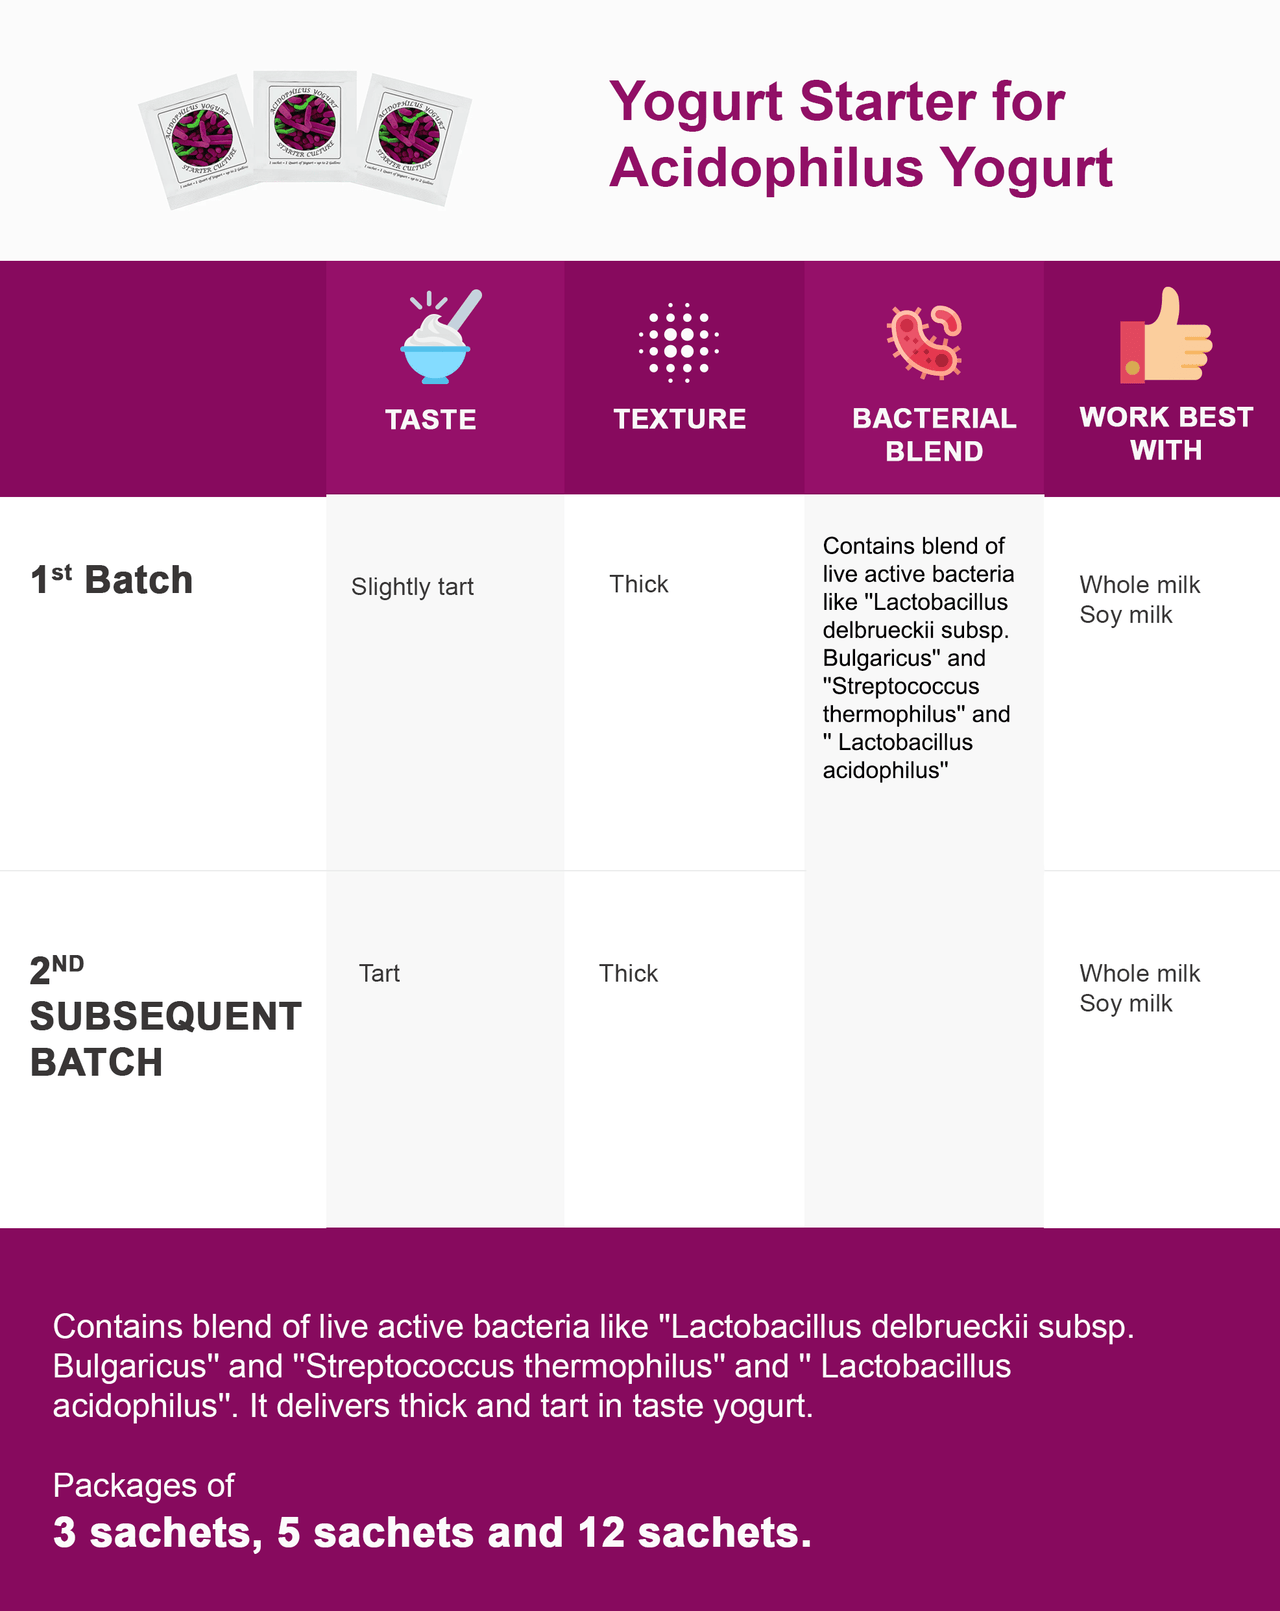 Acidophilus features